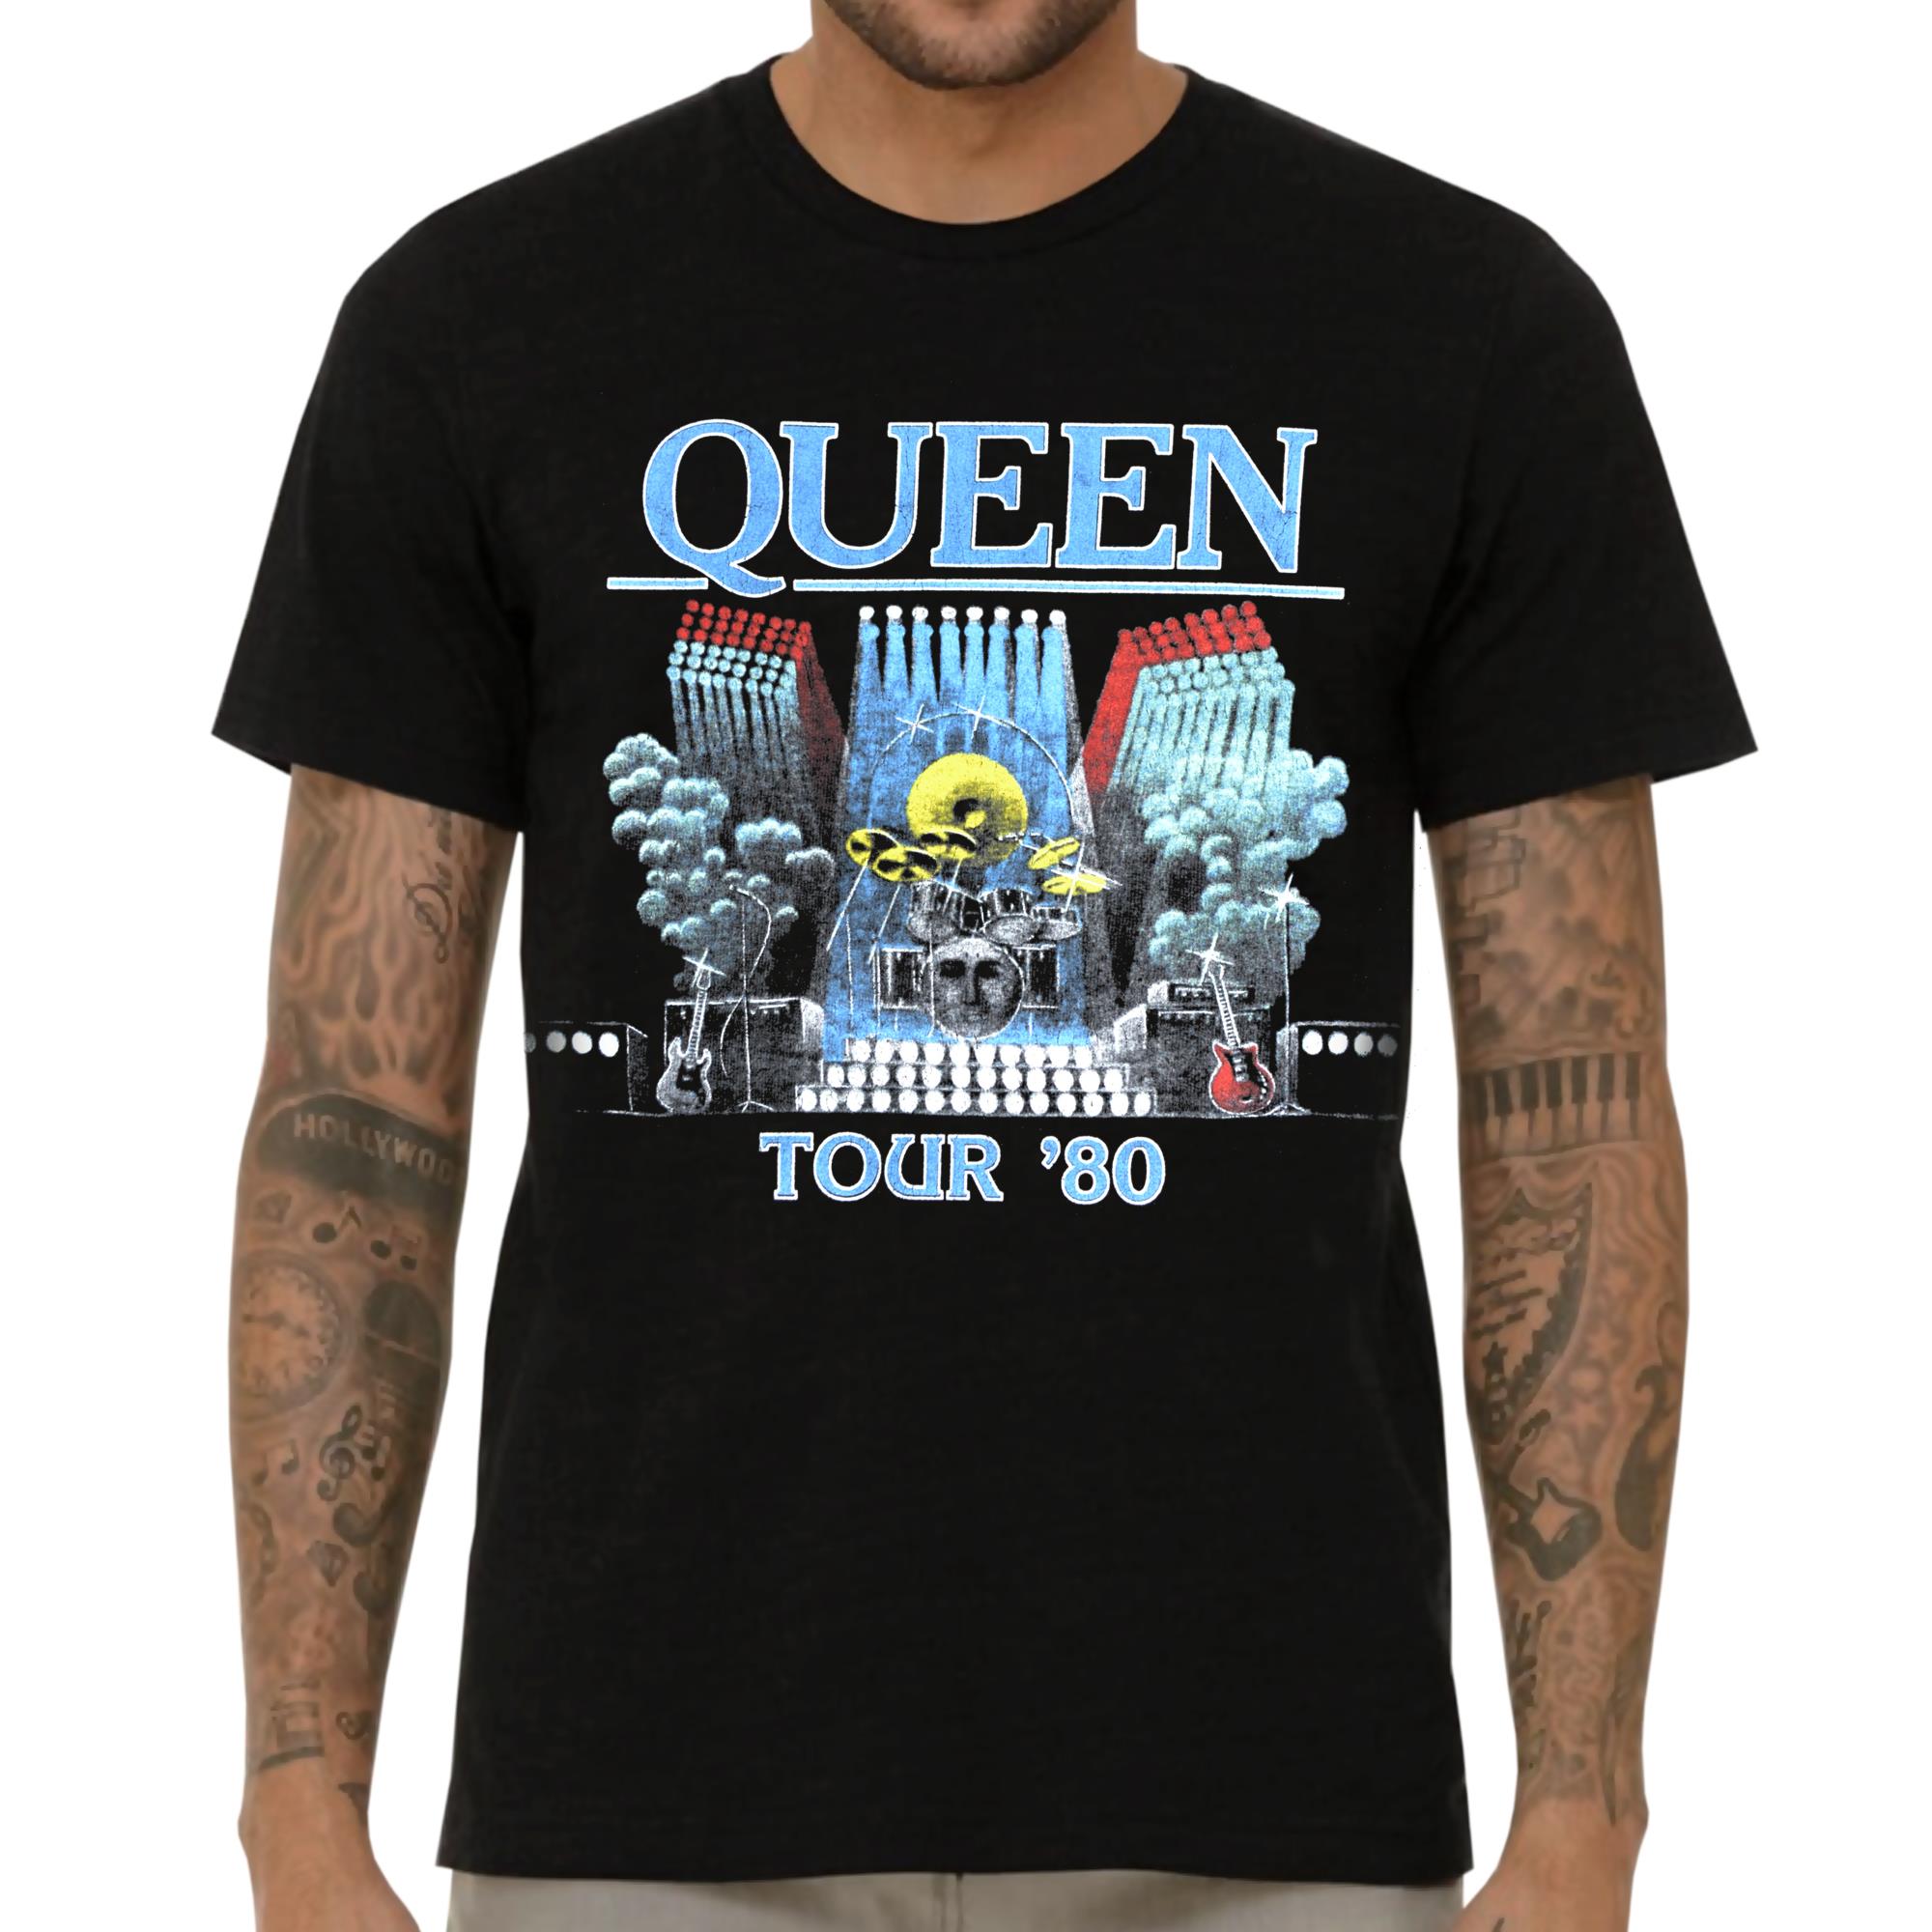 Tour '80 T-Shirt